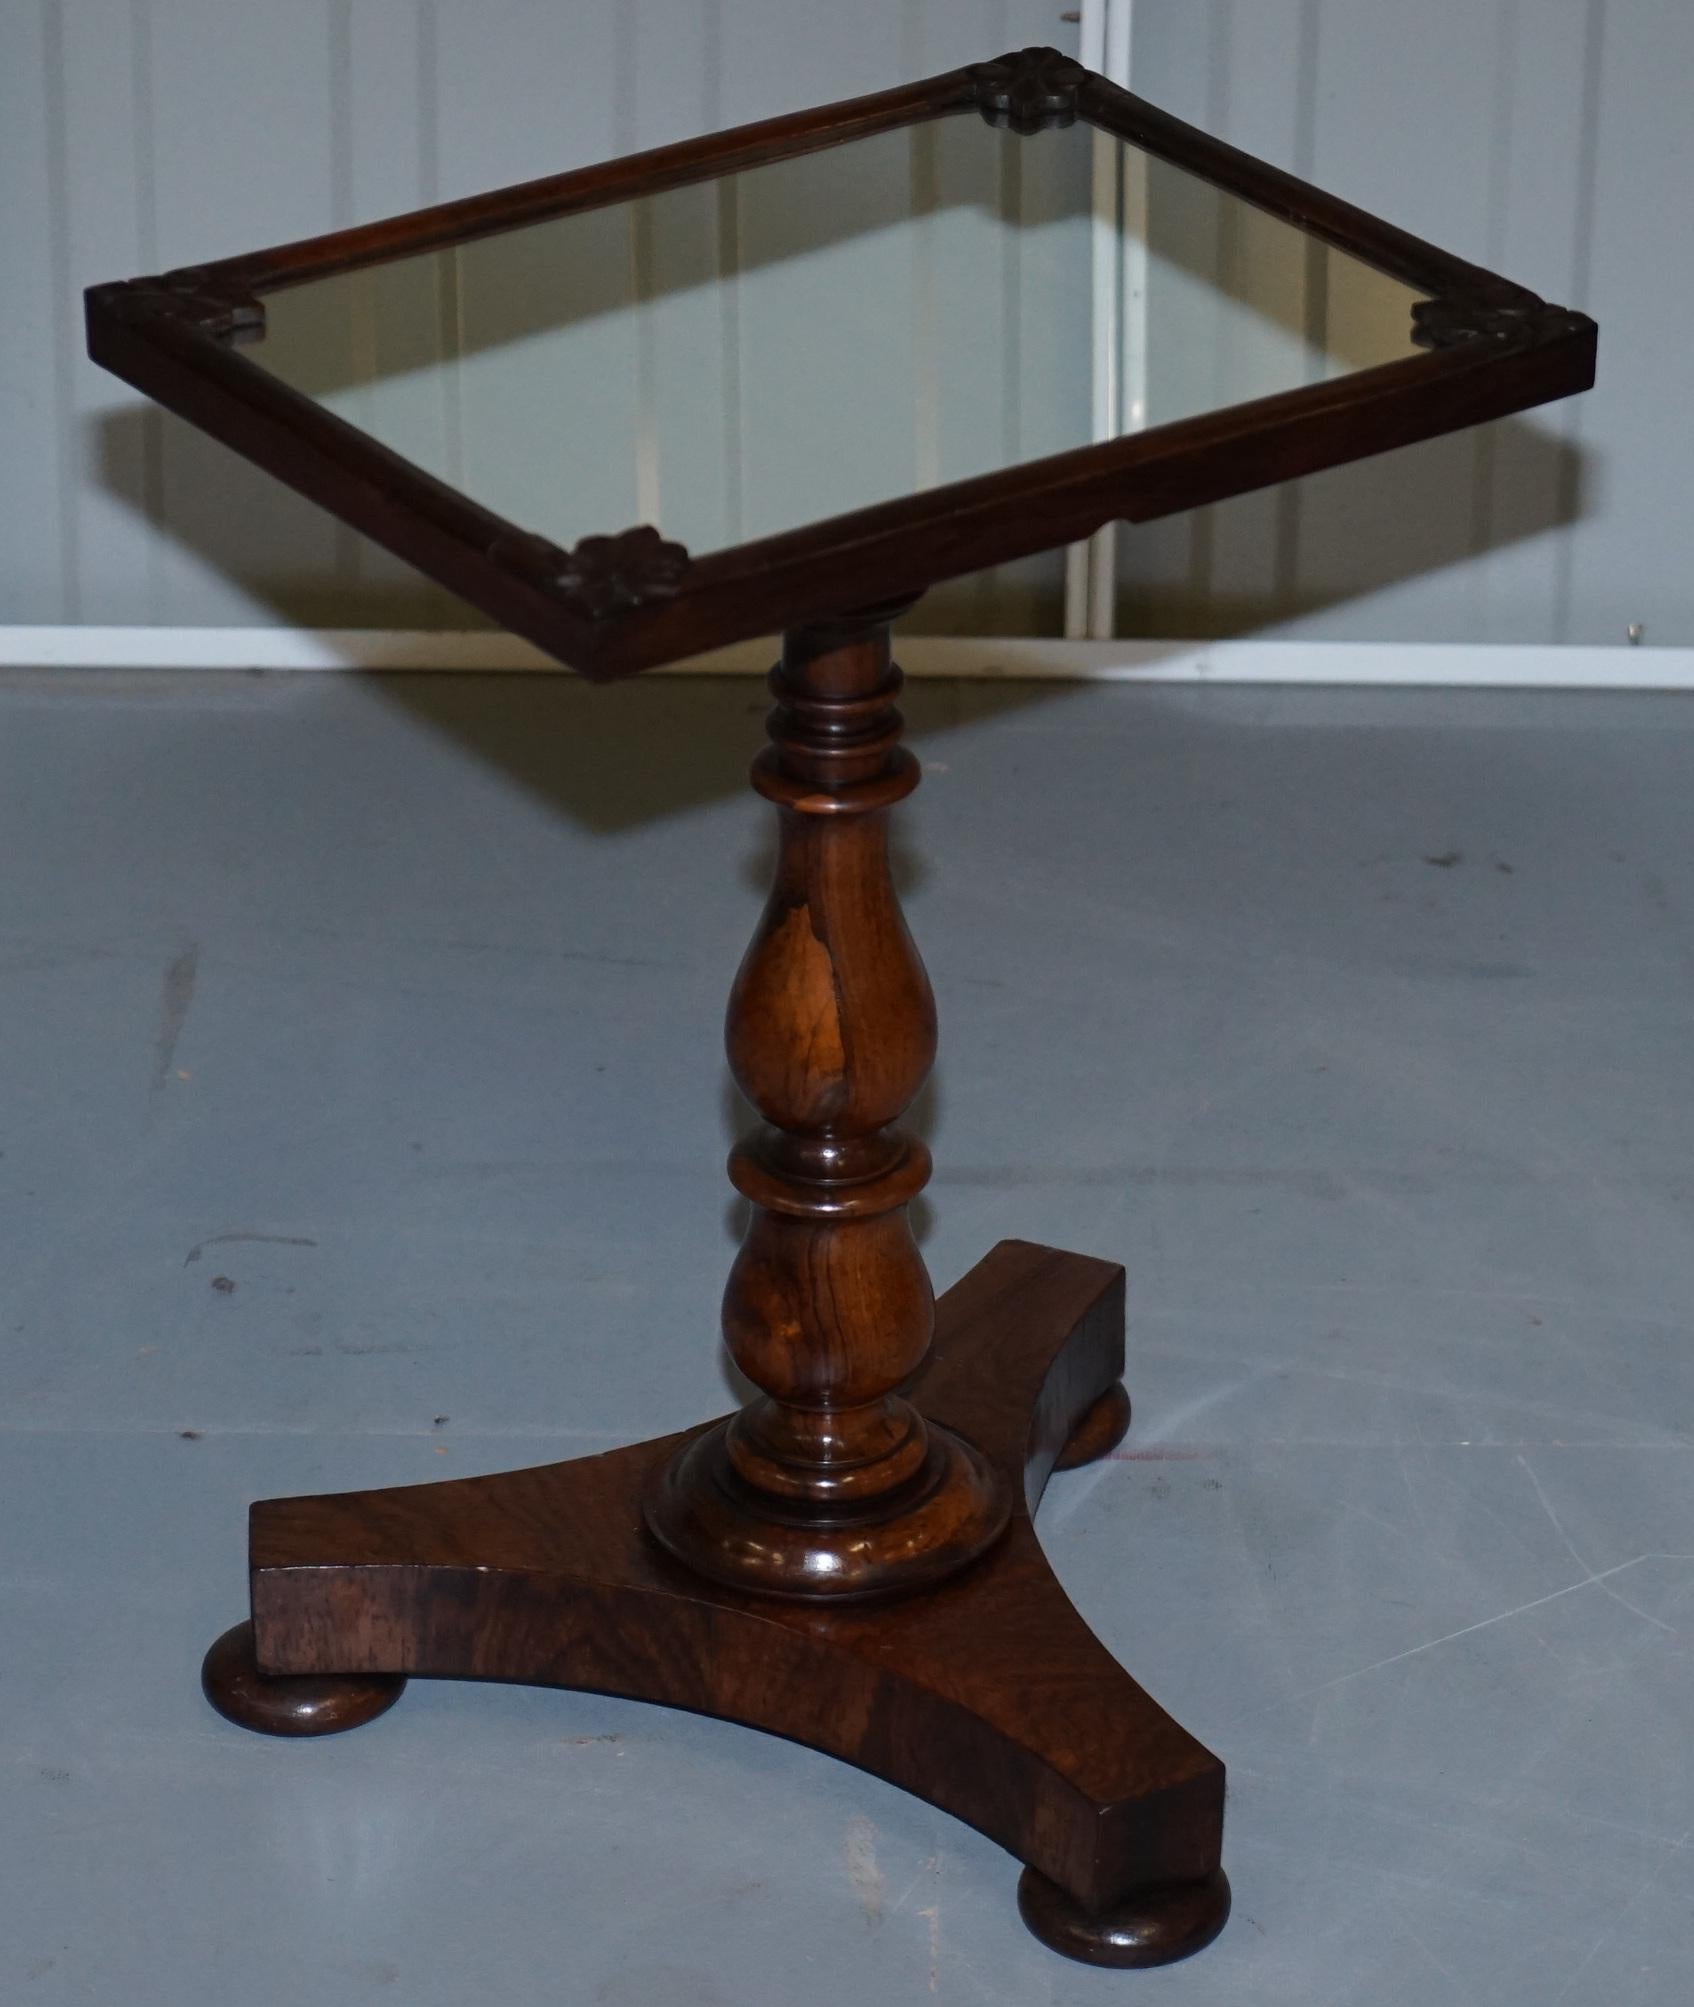 Nous sommes ravis d'offrir à la vente cette paire de tables d'appoint originales William IV circa 1830 en bois dur avec dessus en miroir.

Une paire de tables très fine et rare, la patine du bois est absolument magnifique, tout comme les plateaux